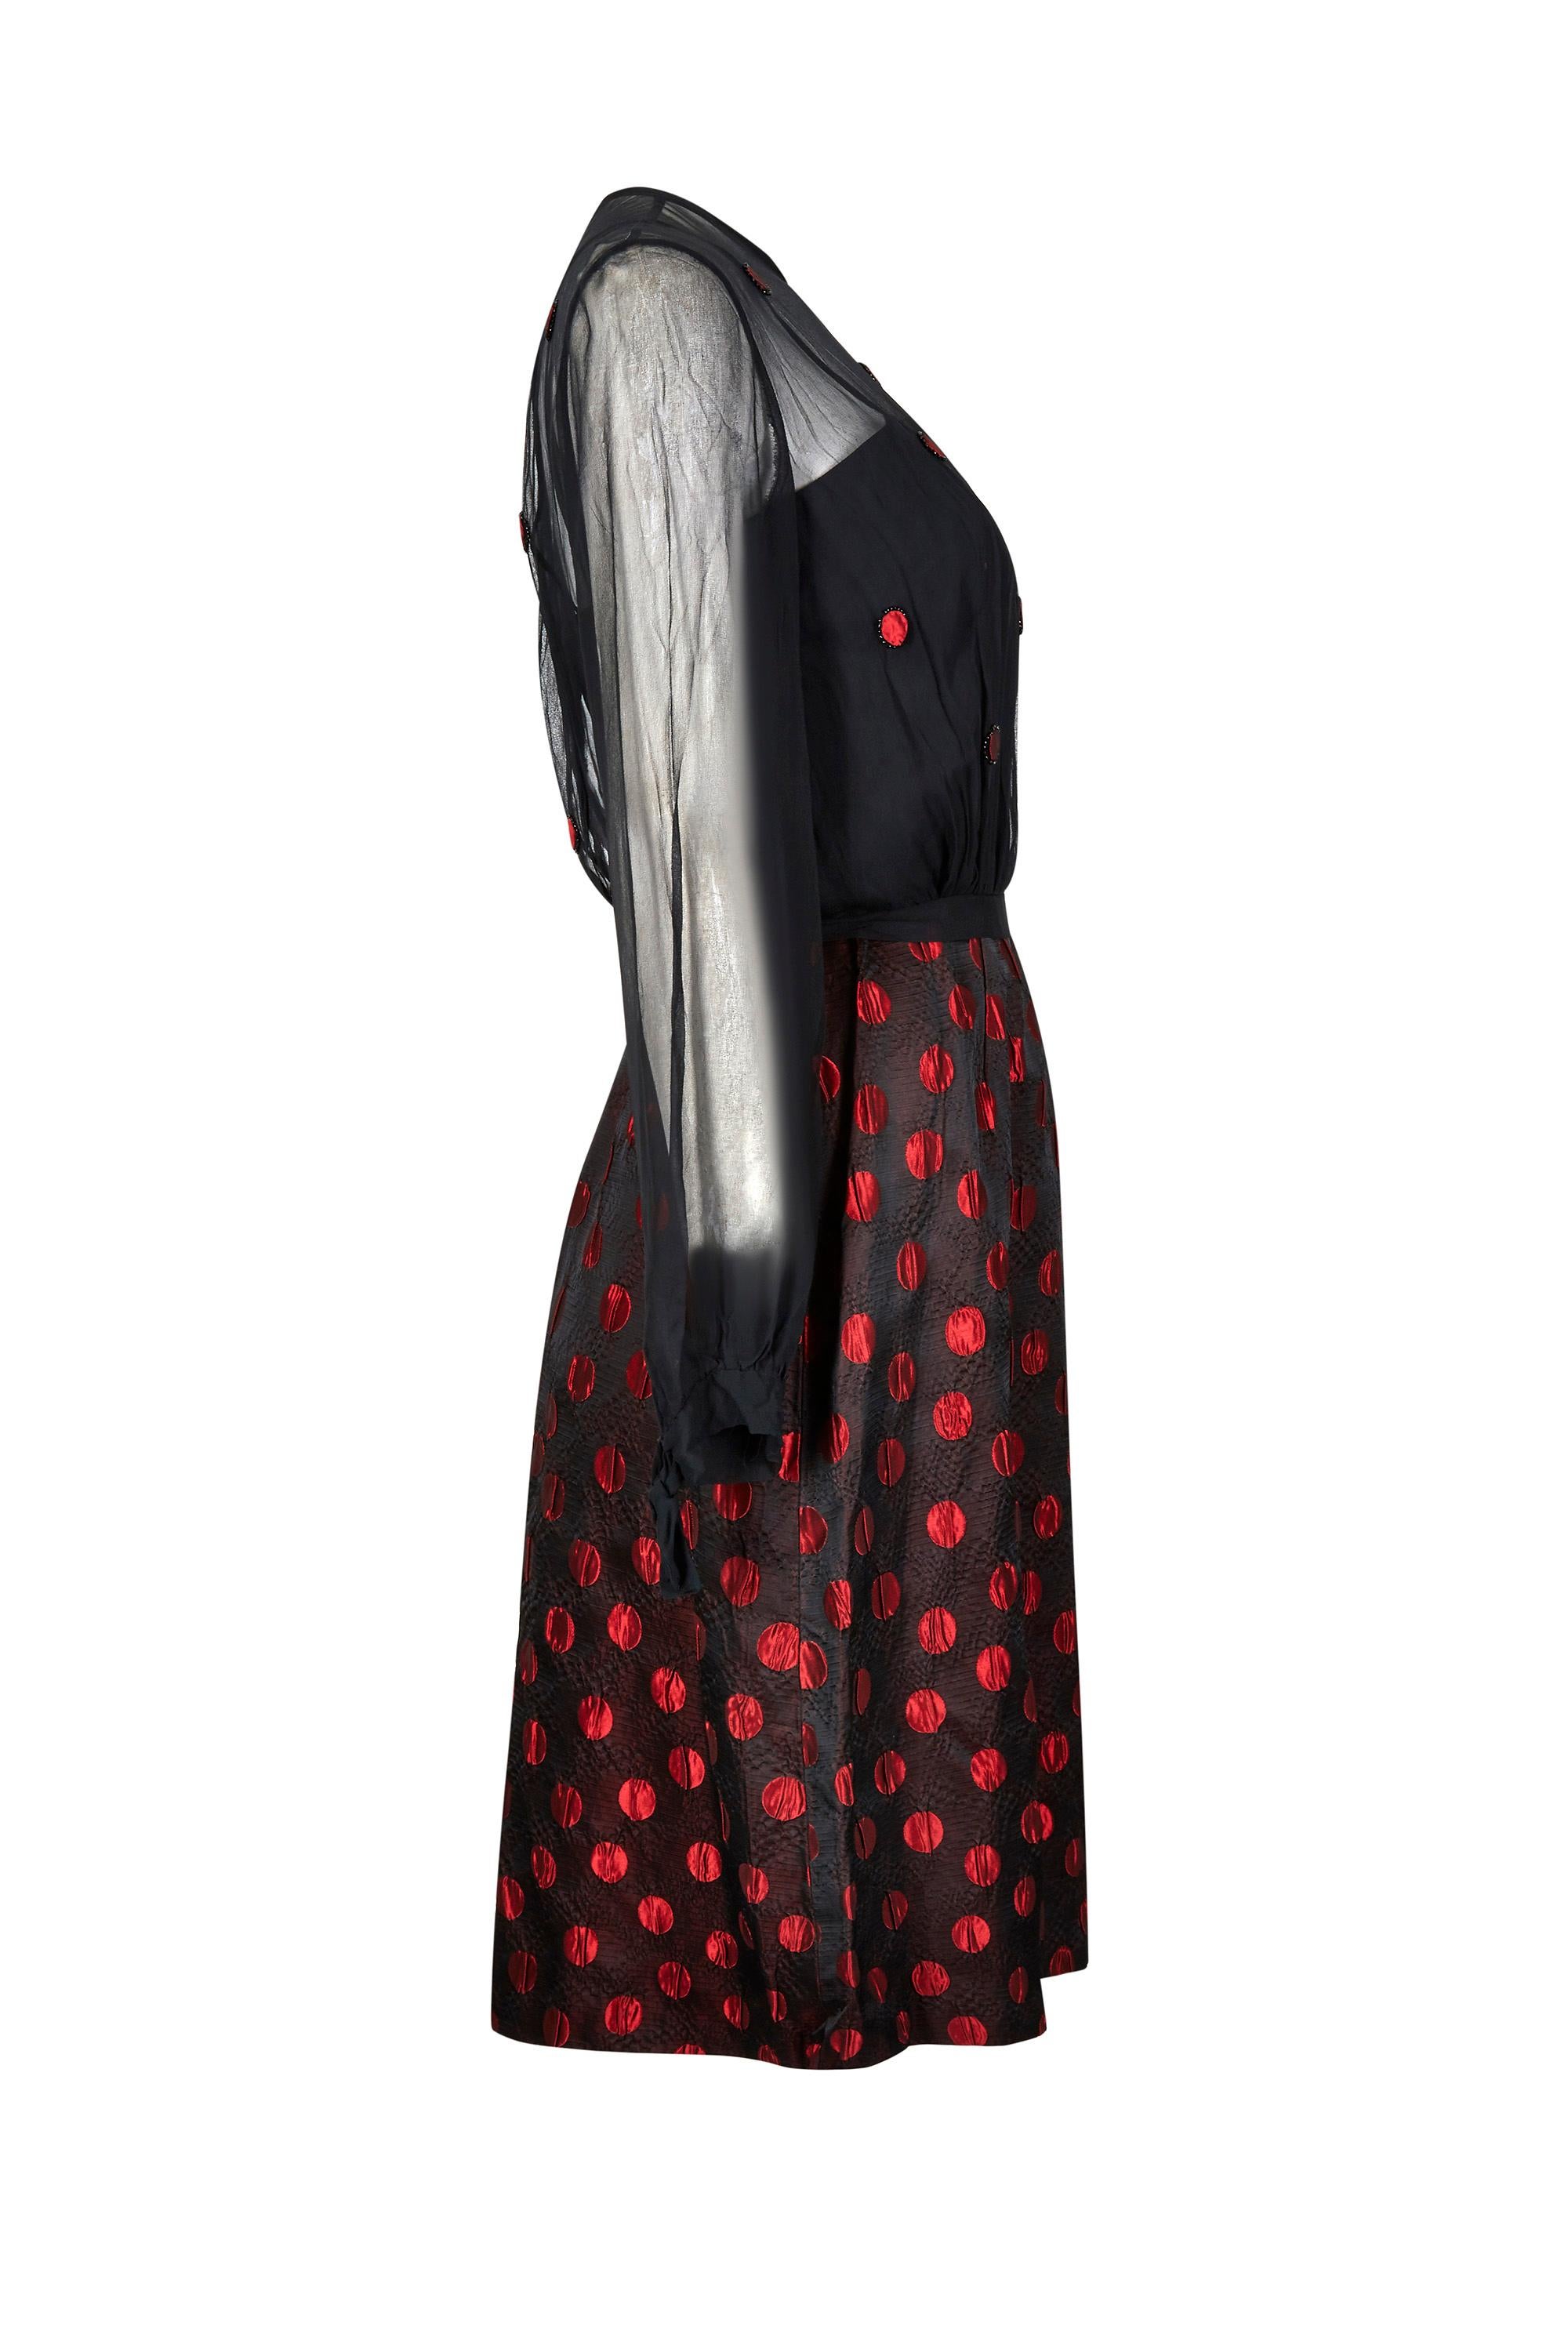 Cet ensemble demi-couture américain à pois rouges et noirs des années 1960 est en très bon état et d'excellente qualité, mais il n'est pas étiqueté et son créateur reste donc inconnu. L'ensemble se compose d'une robe et d'une veste en jacquard de